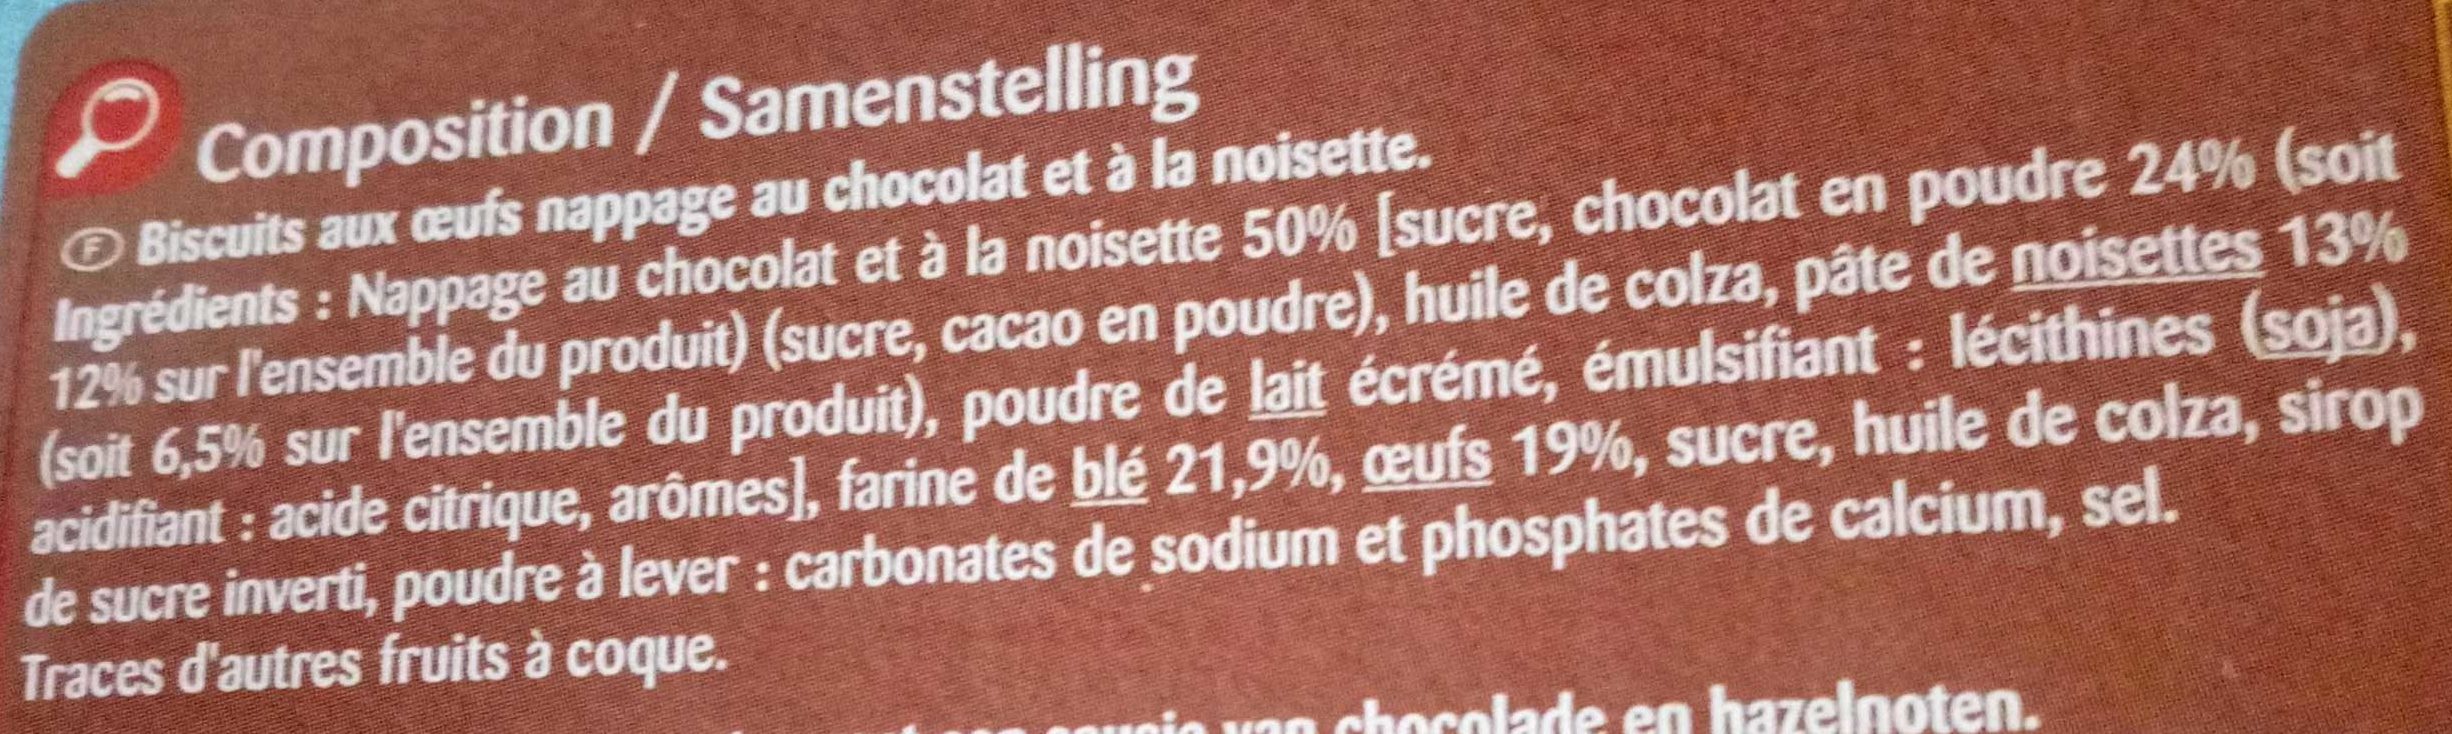 Les barquettes chocolat-noisette - Ingredients - fr